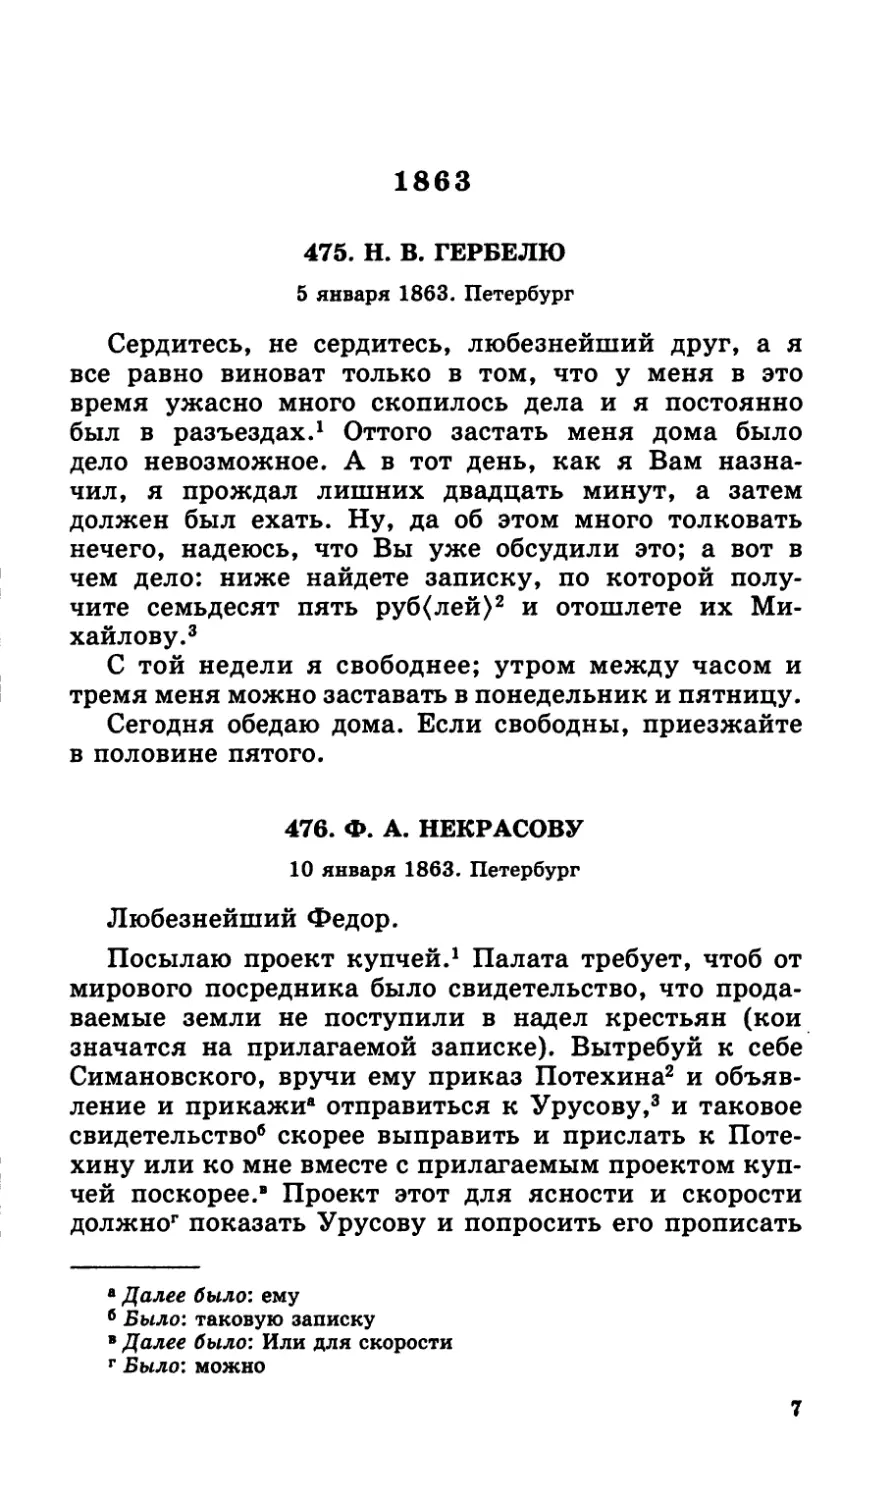 1863
476.Ф. А. Некрасову. 10 января